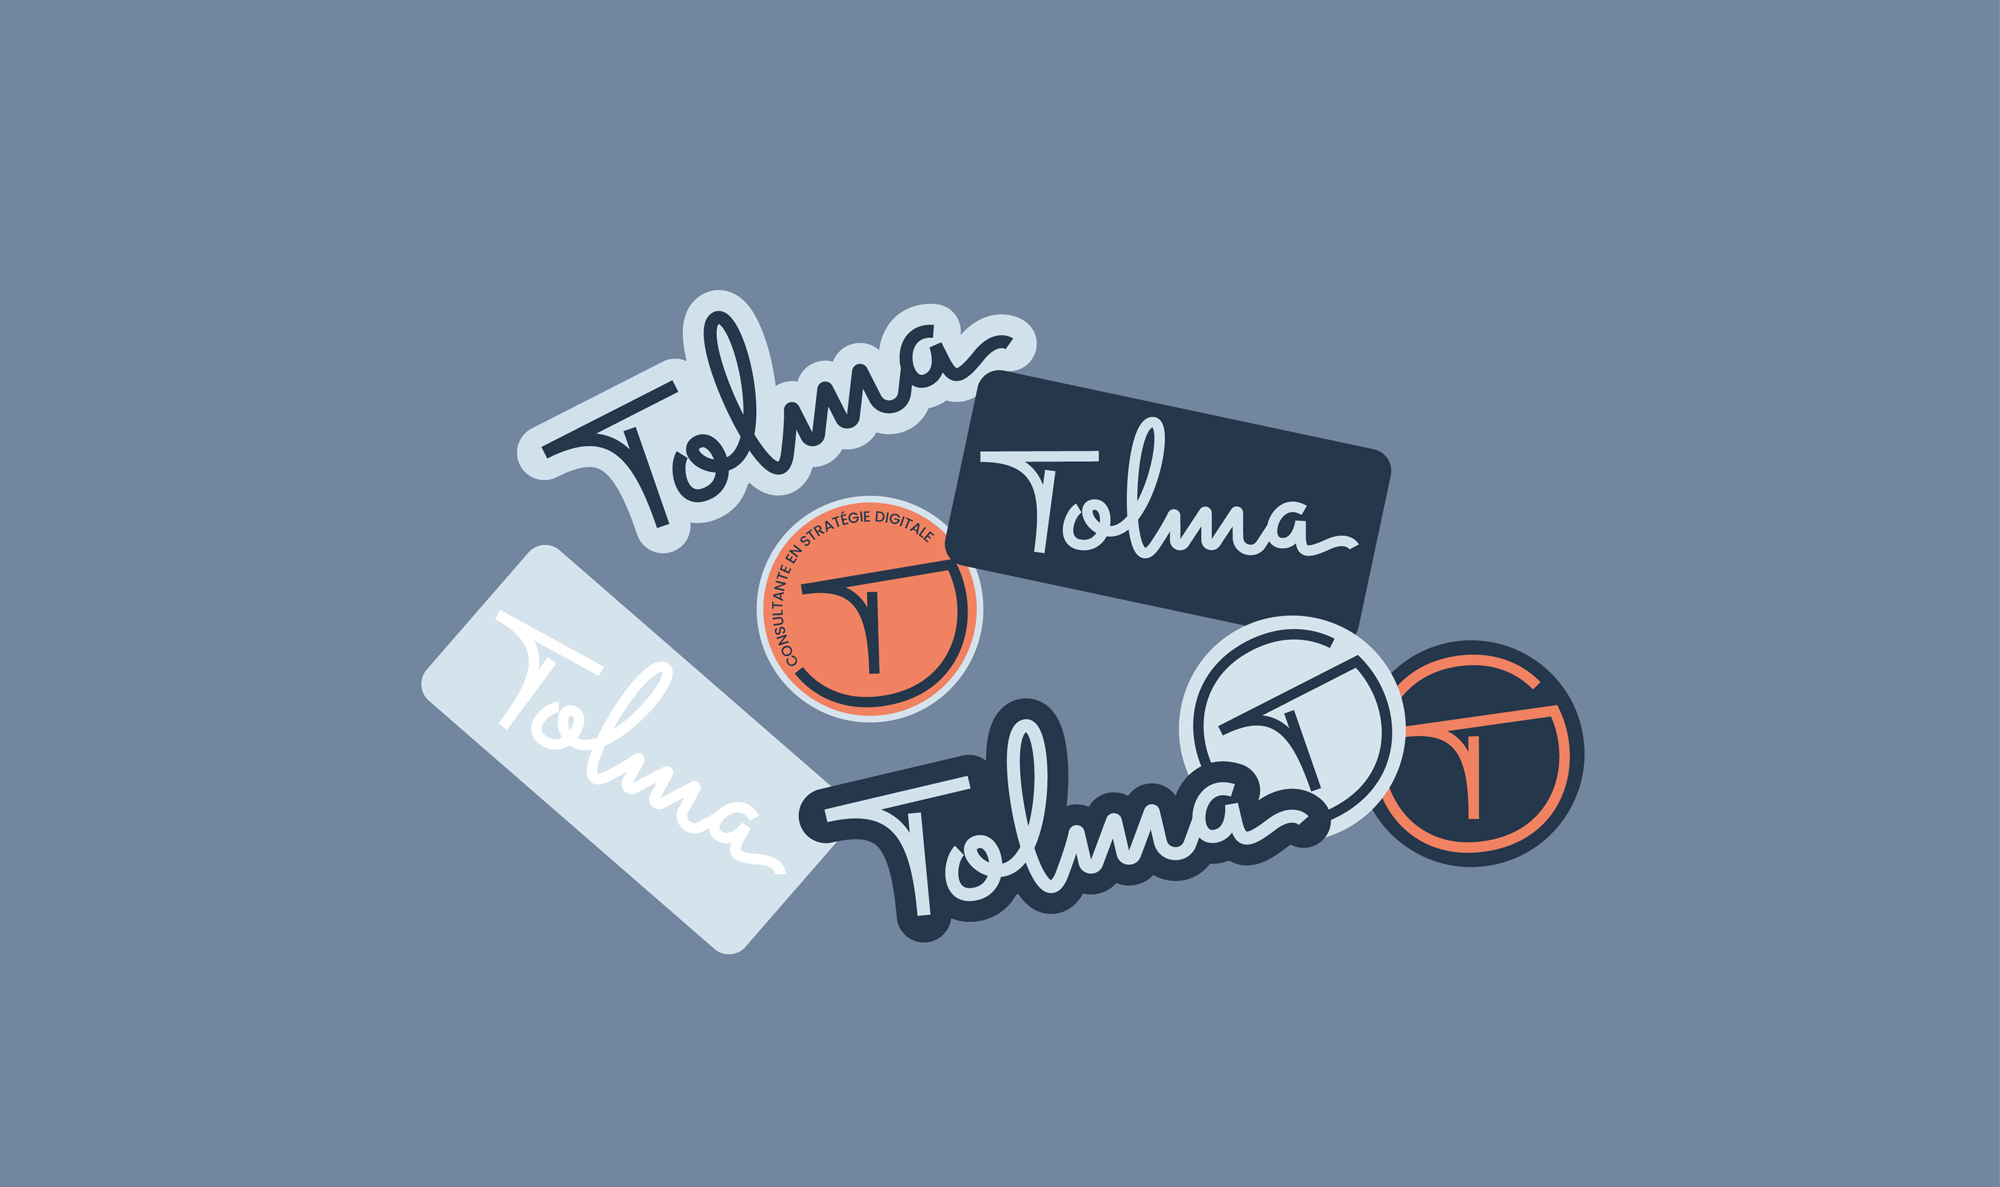 Identité de marque de Tolma, experte en conseil en stratégie digitale, monde numérique et vision stratégique. Stickers